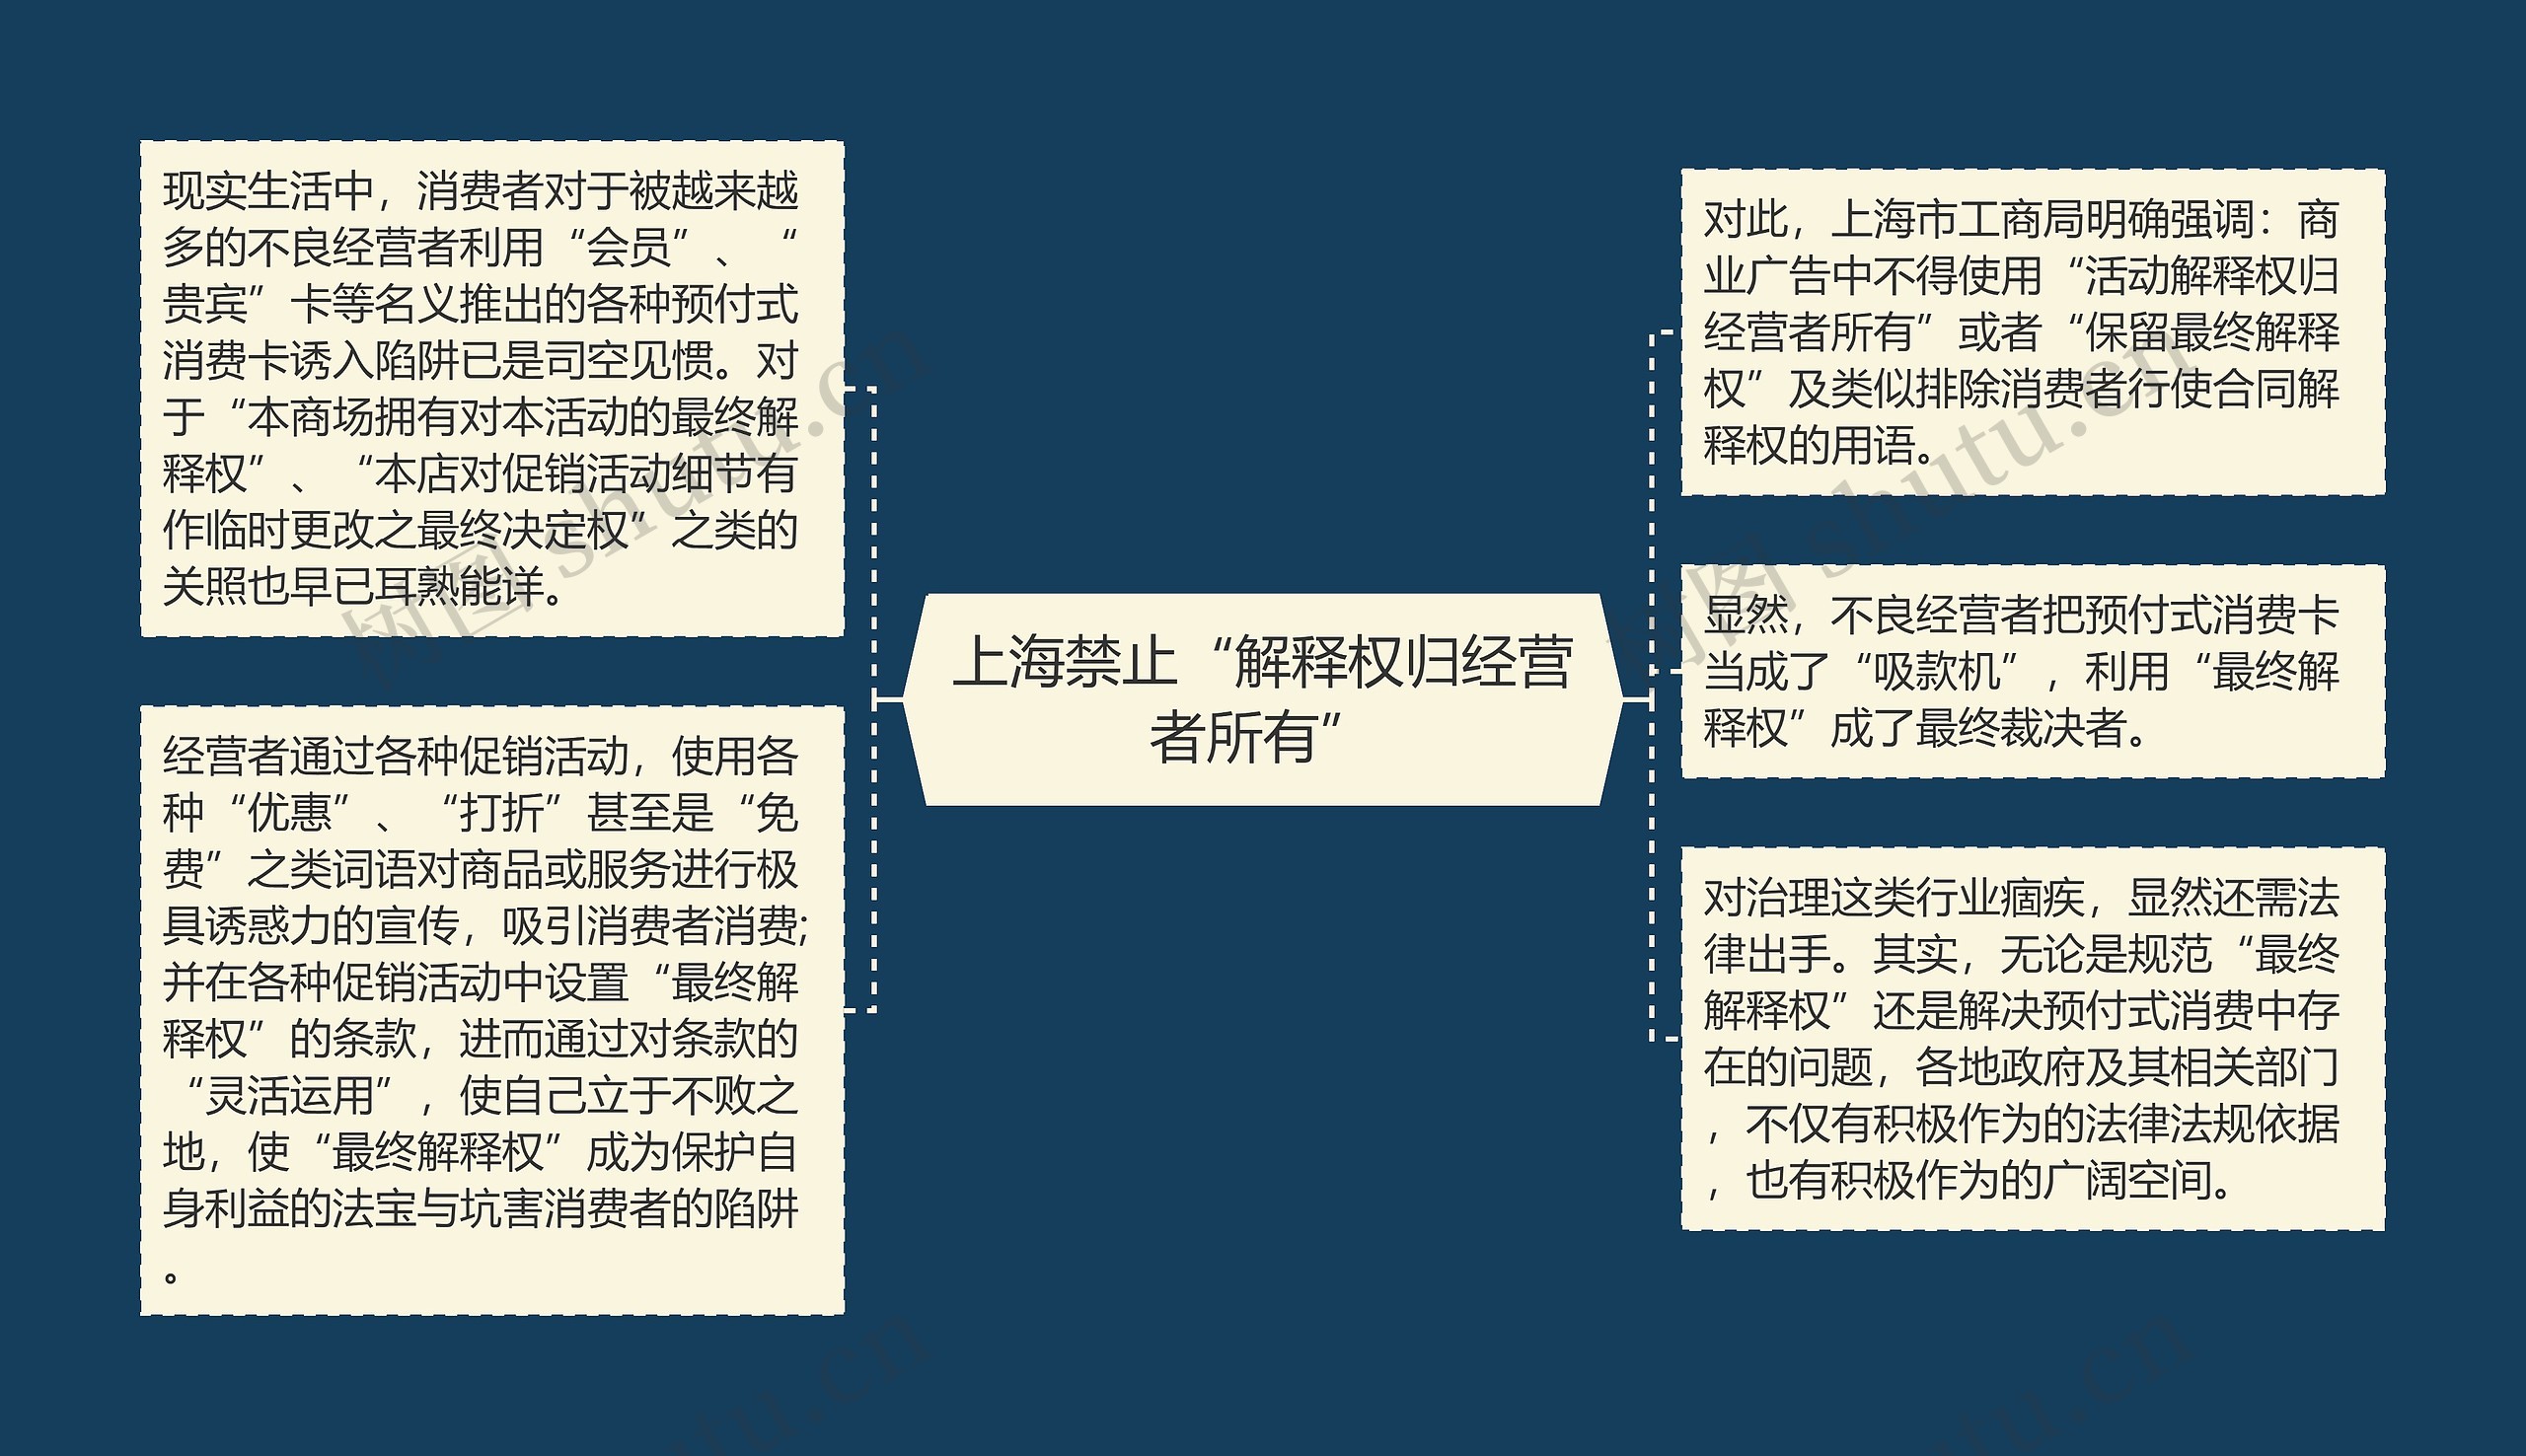 上海禁止“解释权归经营者所有”